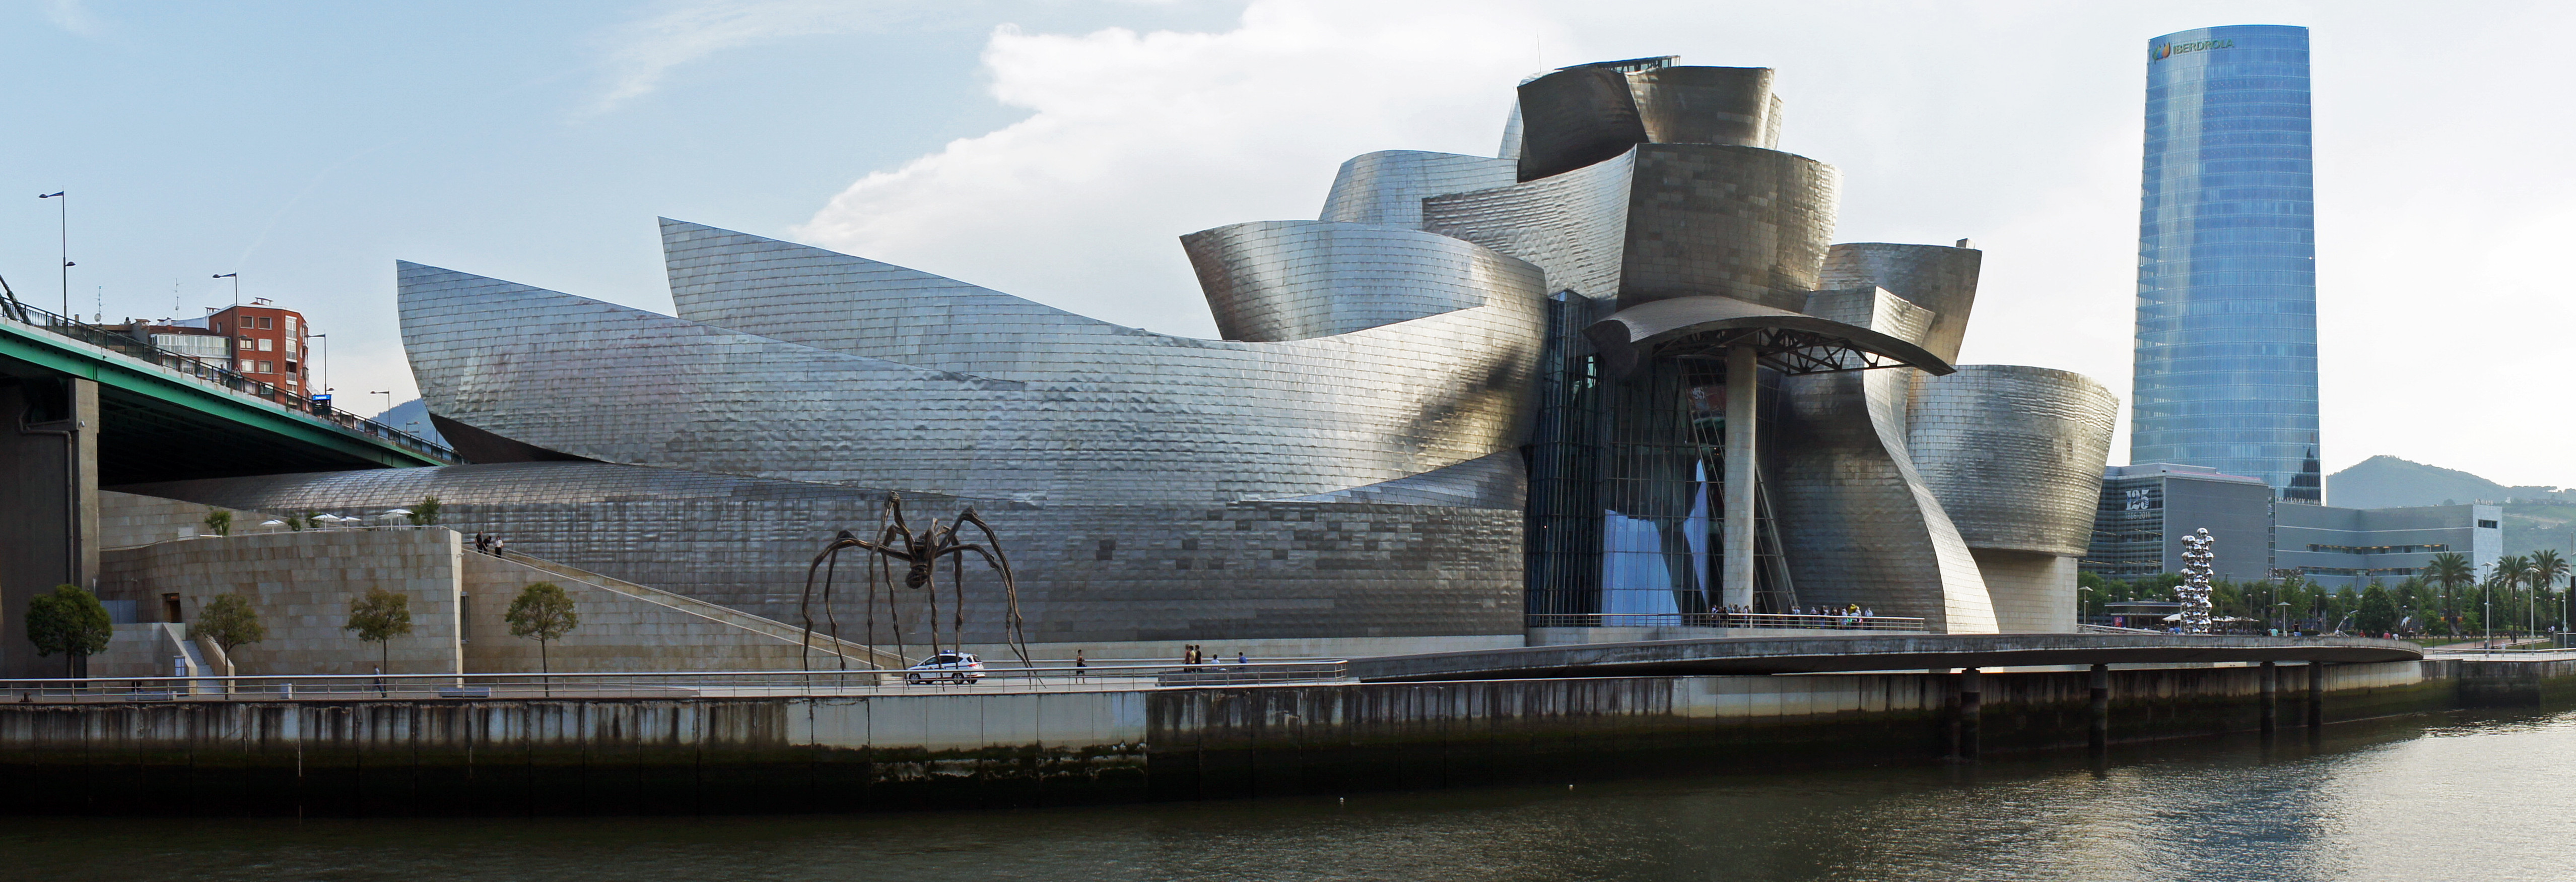 Talleres y eventos gratuitos en Bilbao